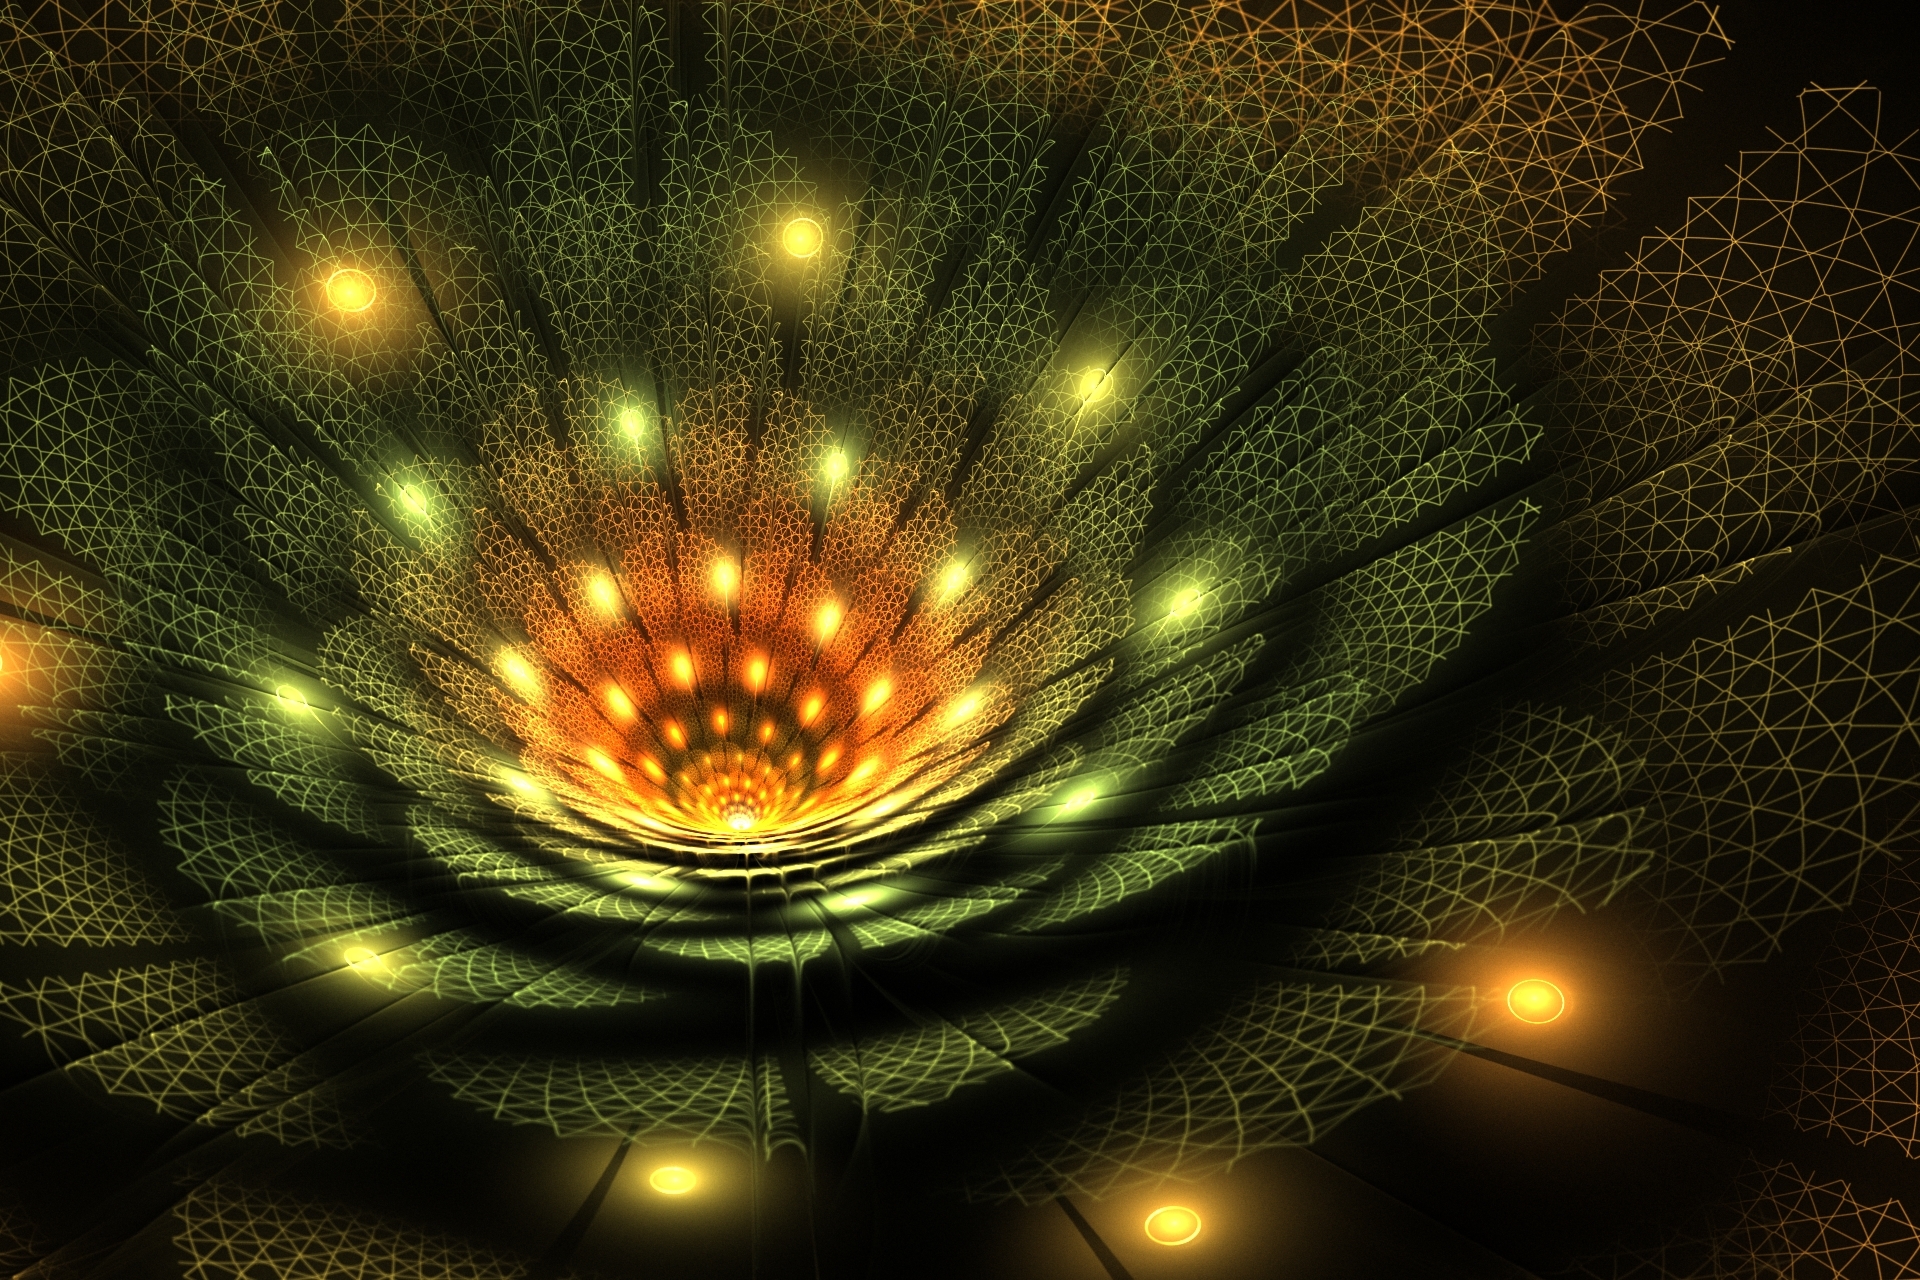 fractal, 3d, abstract Image for desktop